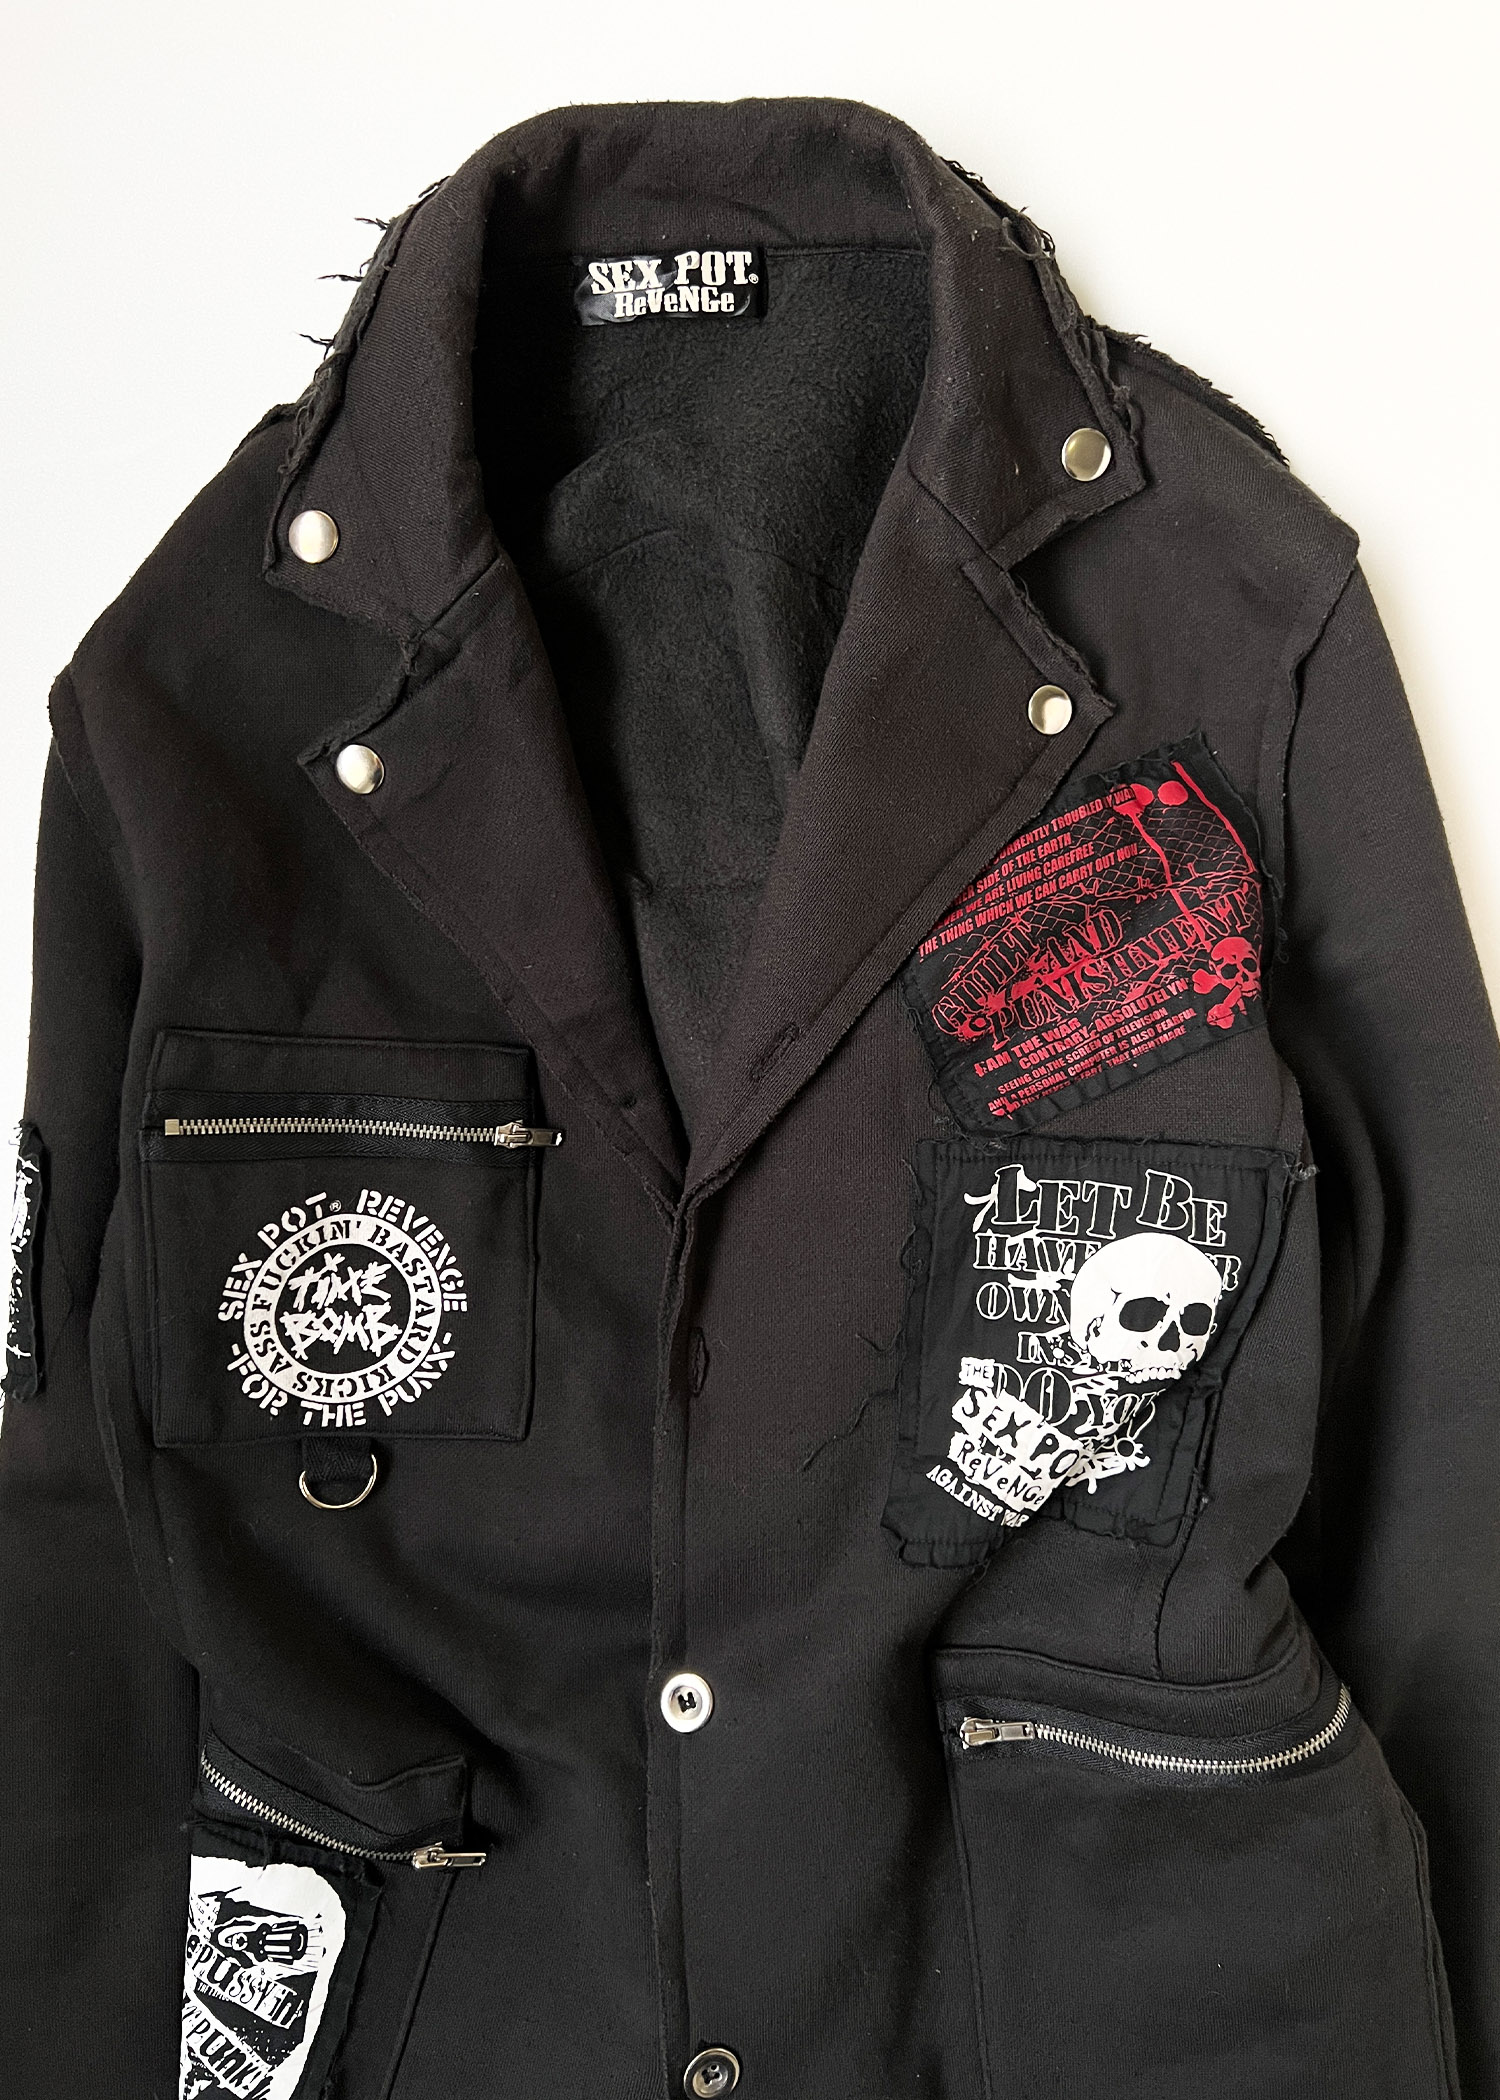 SEX POT REVENGE cotton punk jacket